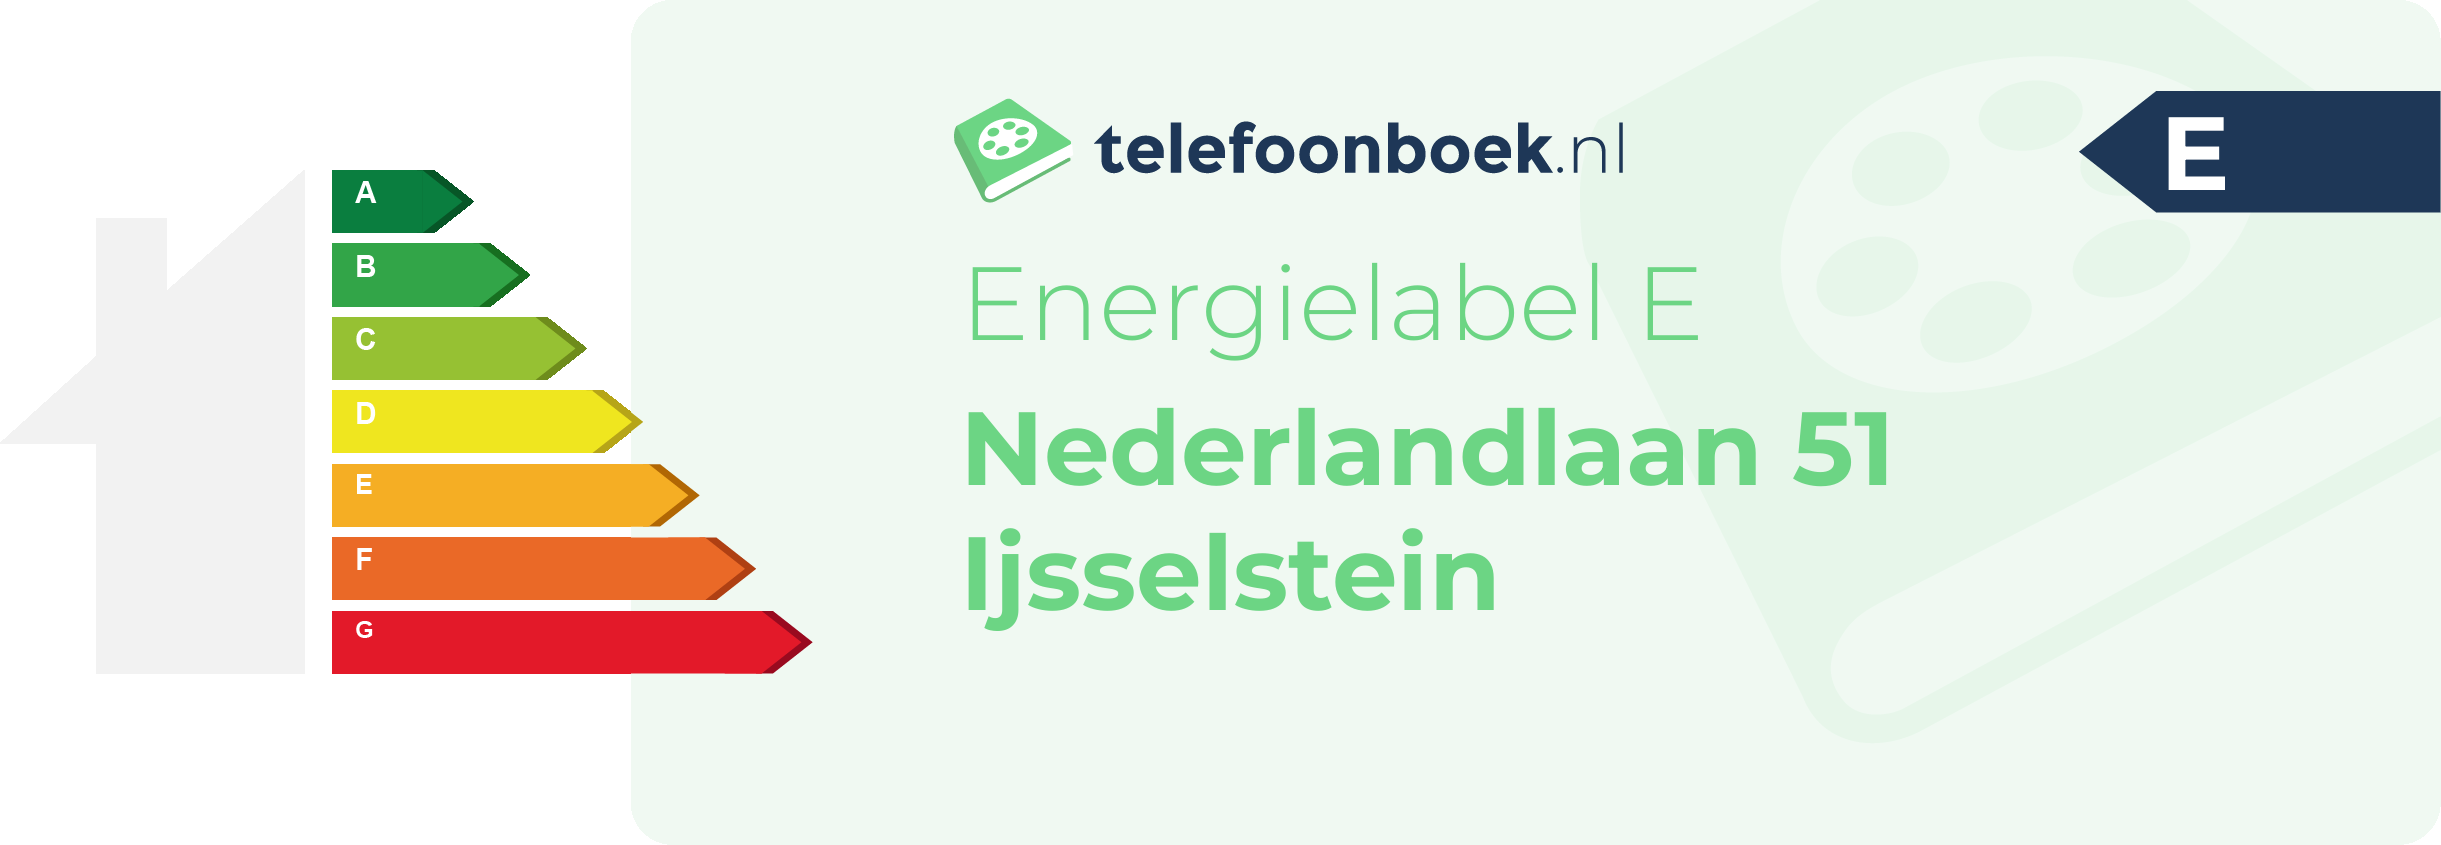 Energielabel Nederlandlaan 51 Ijsselstein